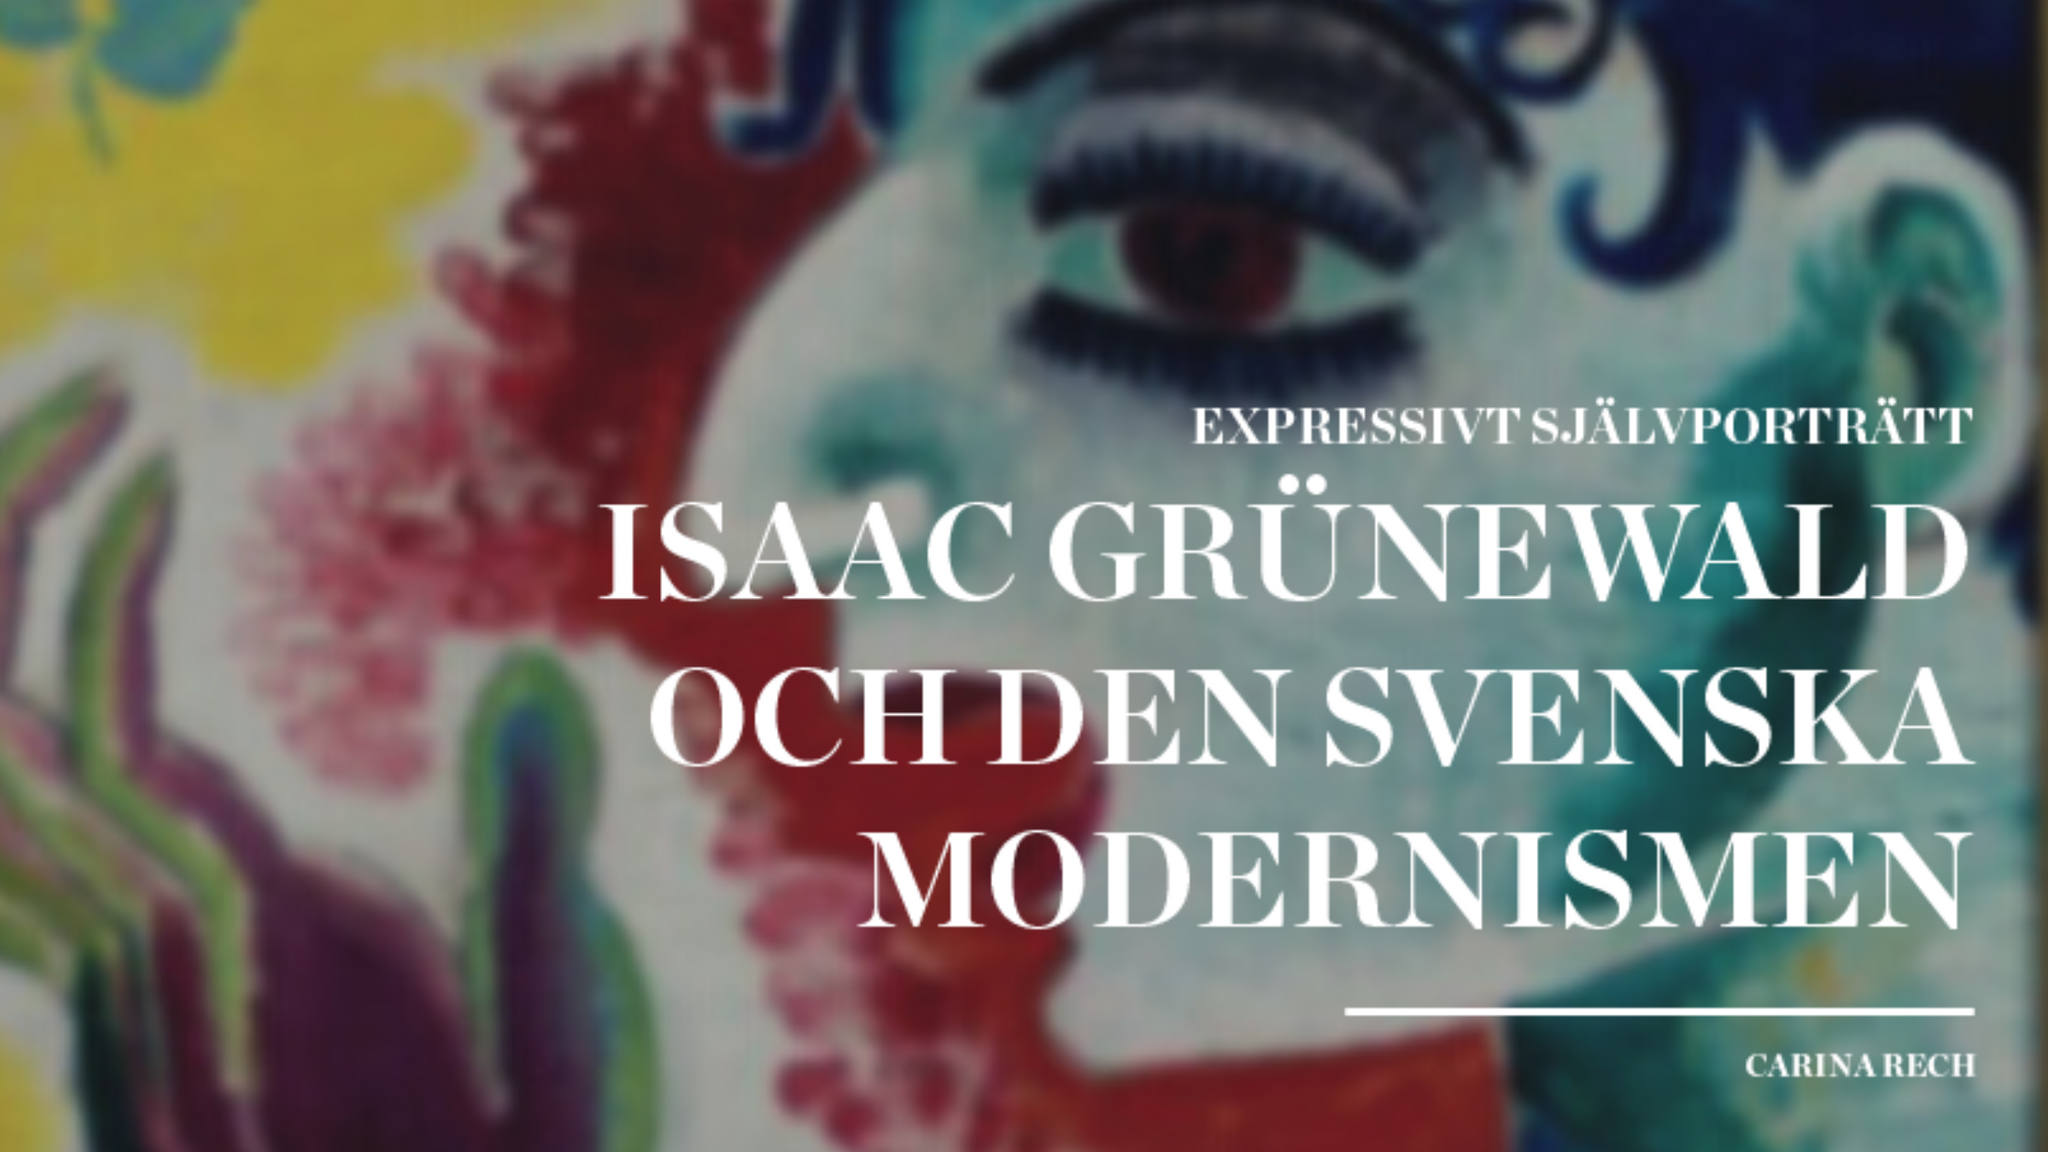 Expressivt självporträtt – Isaac Grünewald och den svenska modernismen